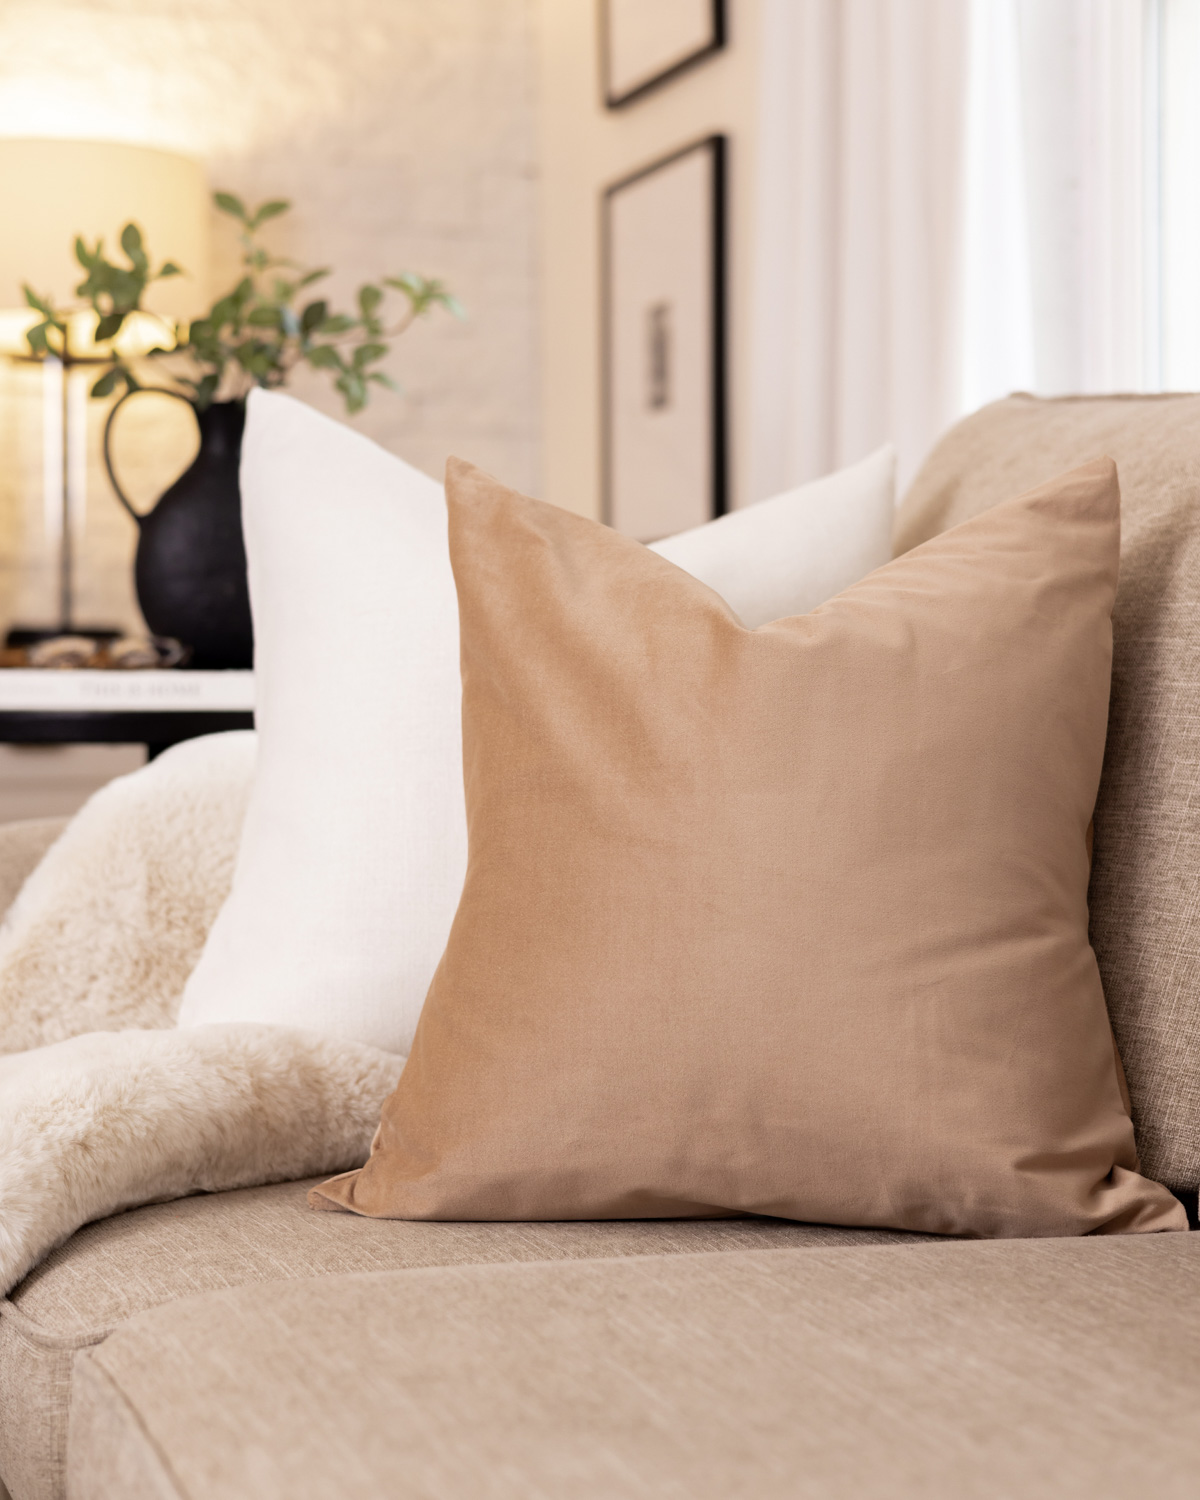 DIY pillows in linen and velvet.